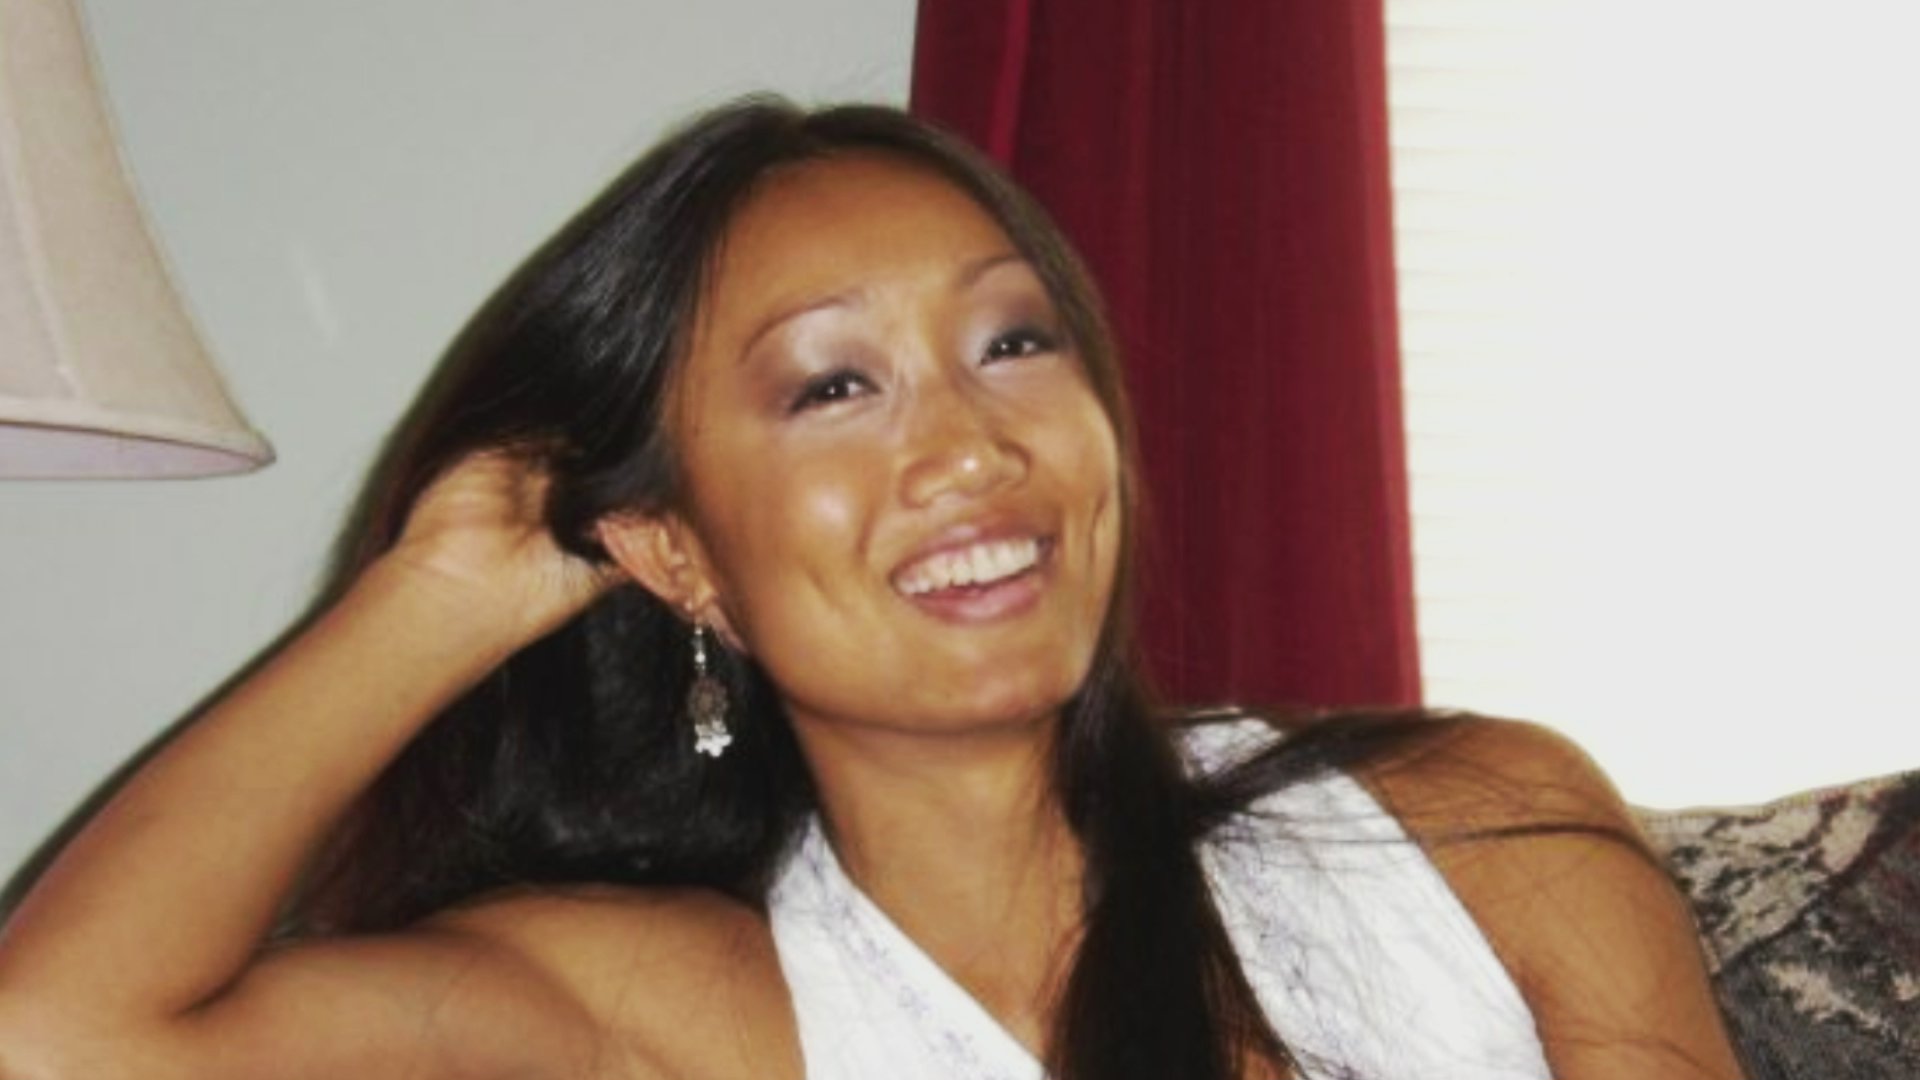 Asian Hogtie Bondage - Rebecca Zahau Case: Bondage Theories, Explained | Crime News